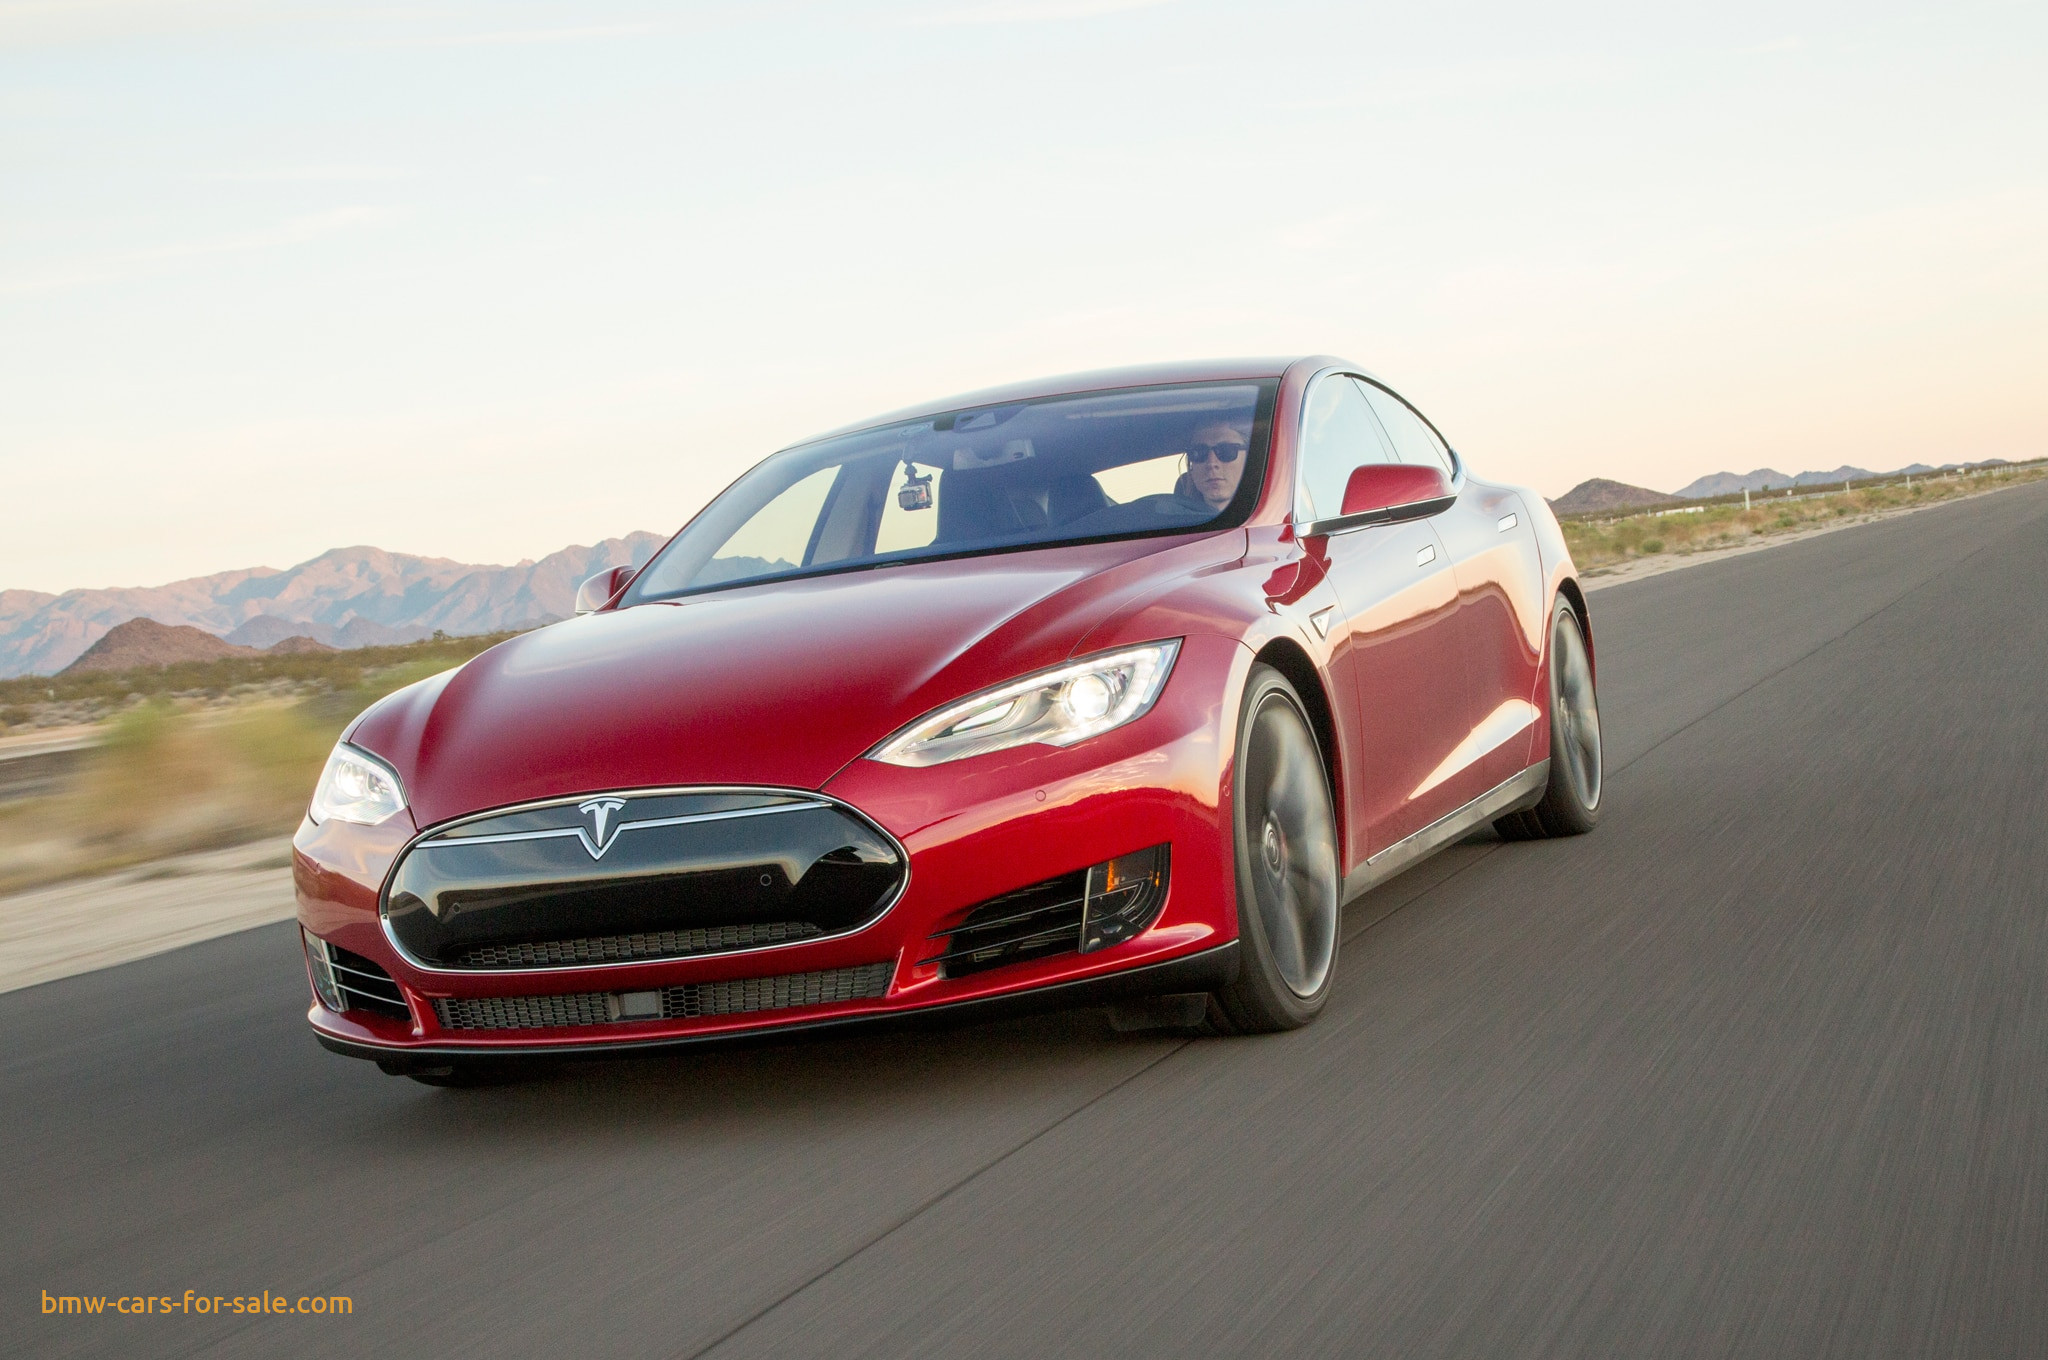 Tesla model s - модельный ряд - обзор - параметры